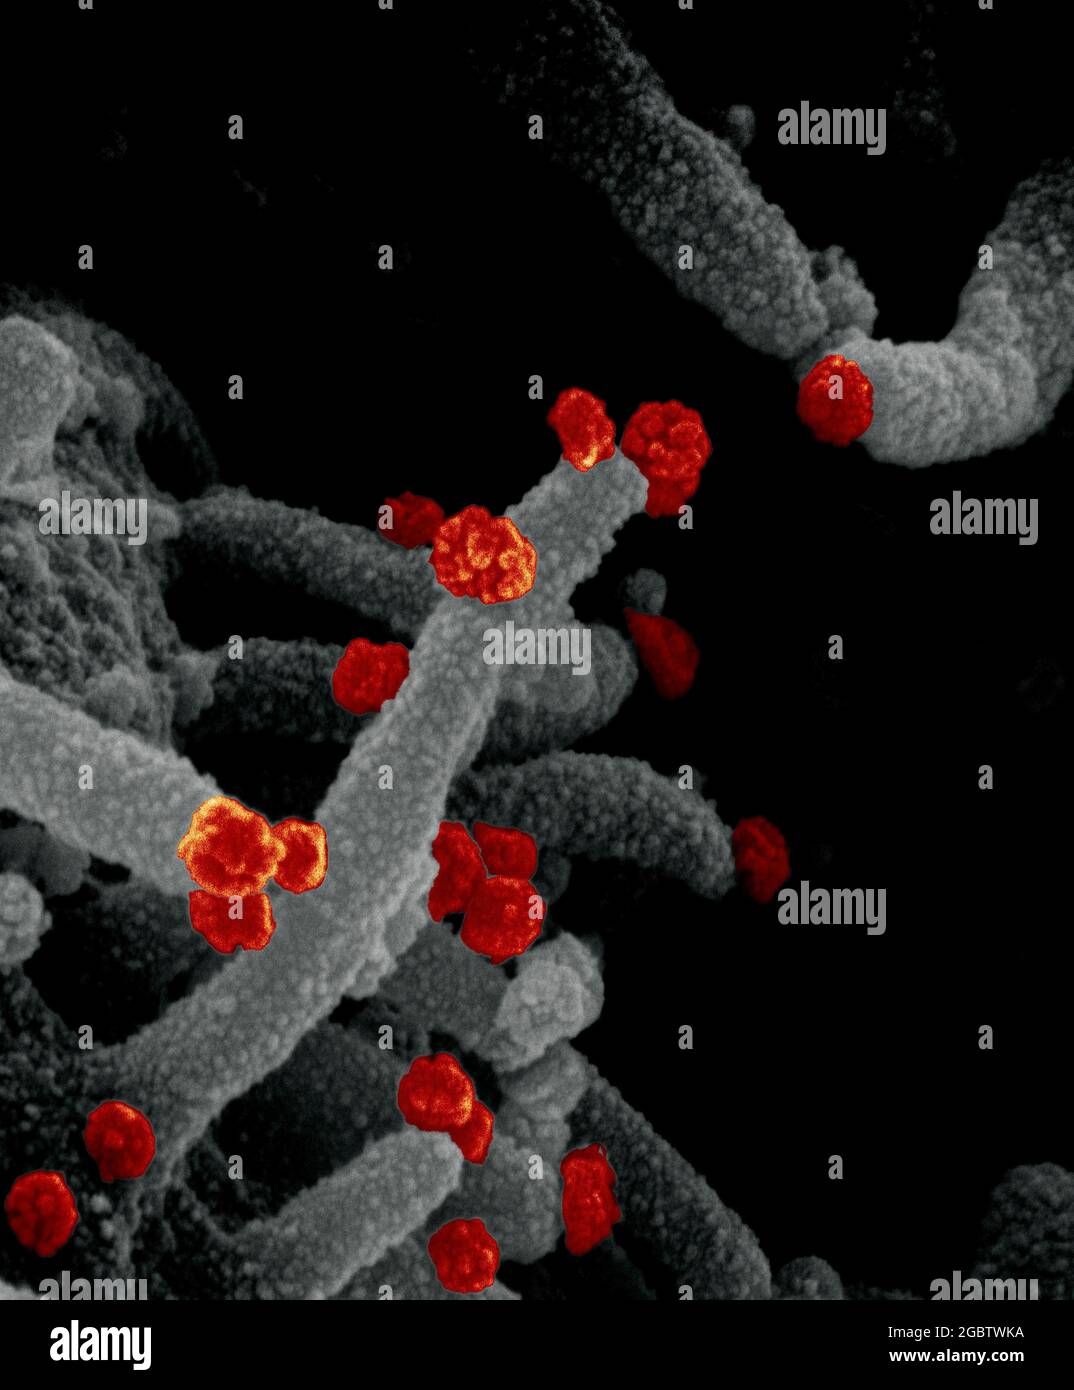 Novel Coronavirus SARS-COV-2 questa immagine al microscopio elettronico a scansione mostra SARS-COV-2 (particelle rosse rotonde) che emergono dalla superficie di una cellula coltivata nel laboratorio. SARS-COV-2, noto anche come 2019-nCoV, è il virus che causa COVID-19. Immagine catturata e colorata presso i Rocky Mountain Laboratories di Hamilton, Montana. Credito: NIAID Foto Stock